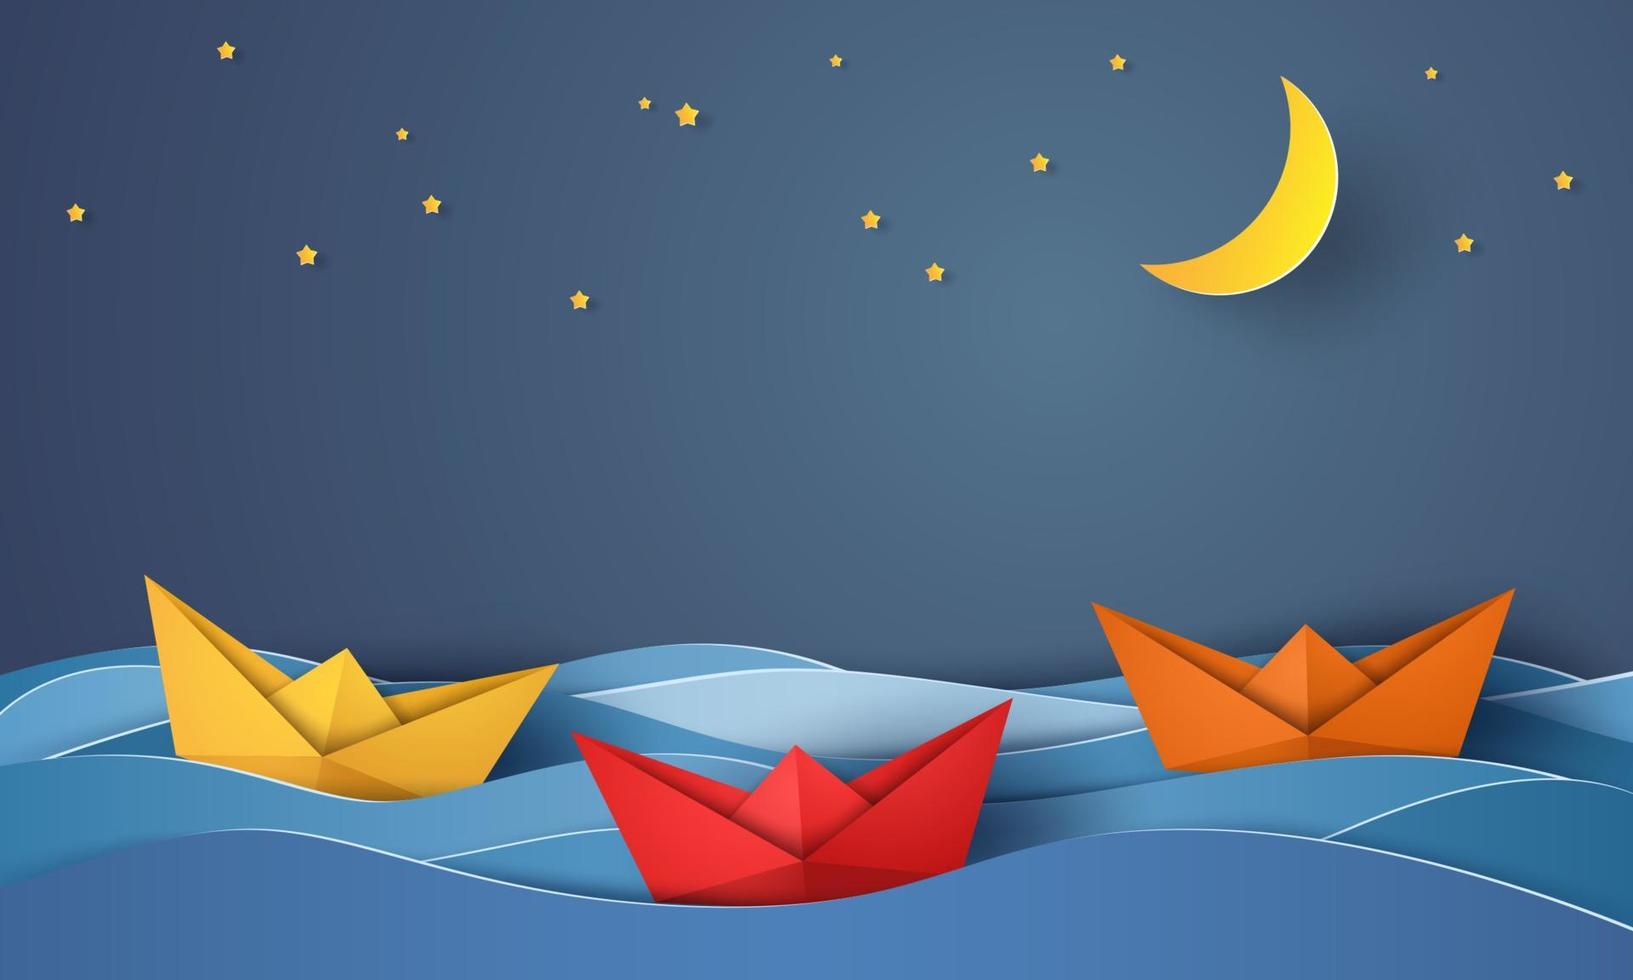 Barco de origami navegando en el océano azul por la noche, estilo de arte en papel vector